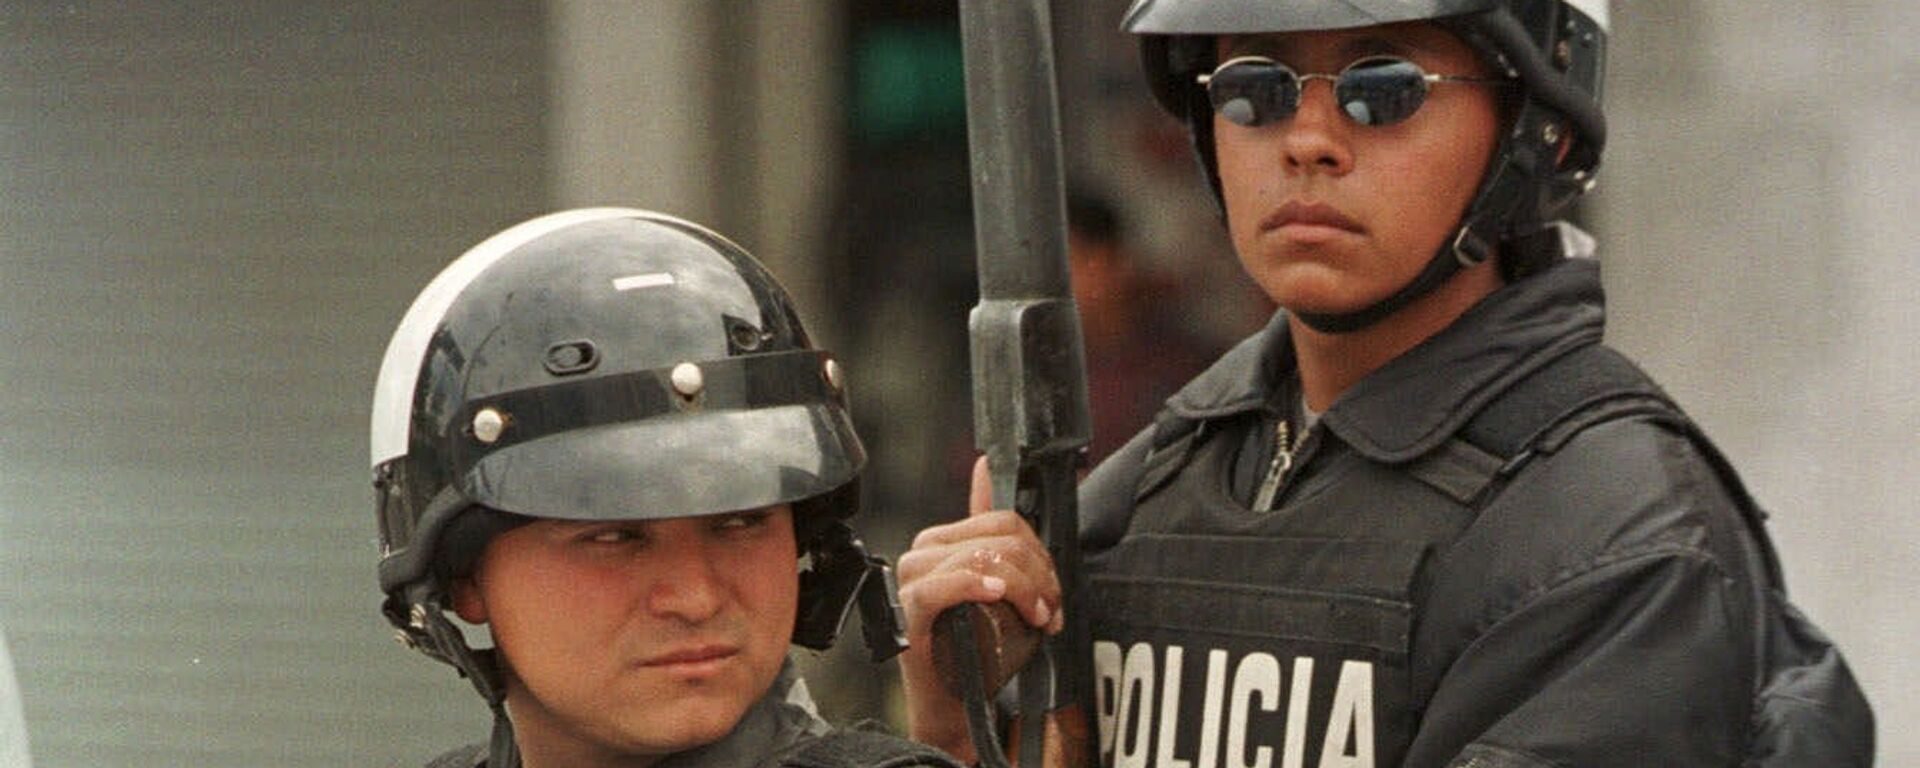 Policía de Ecuador (archivo) - Sputnik Mundo, 1920, 31.05.2021